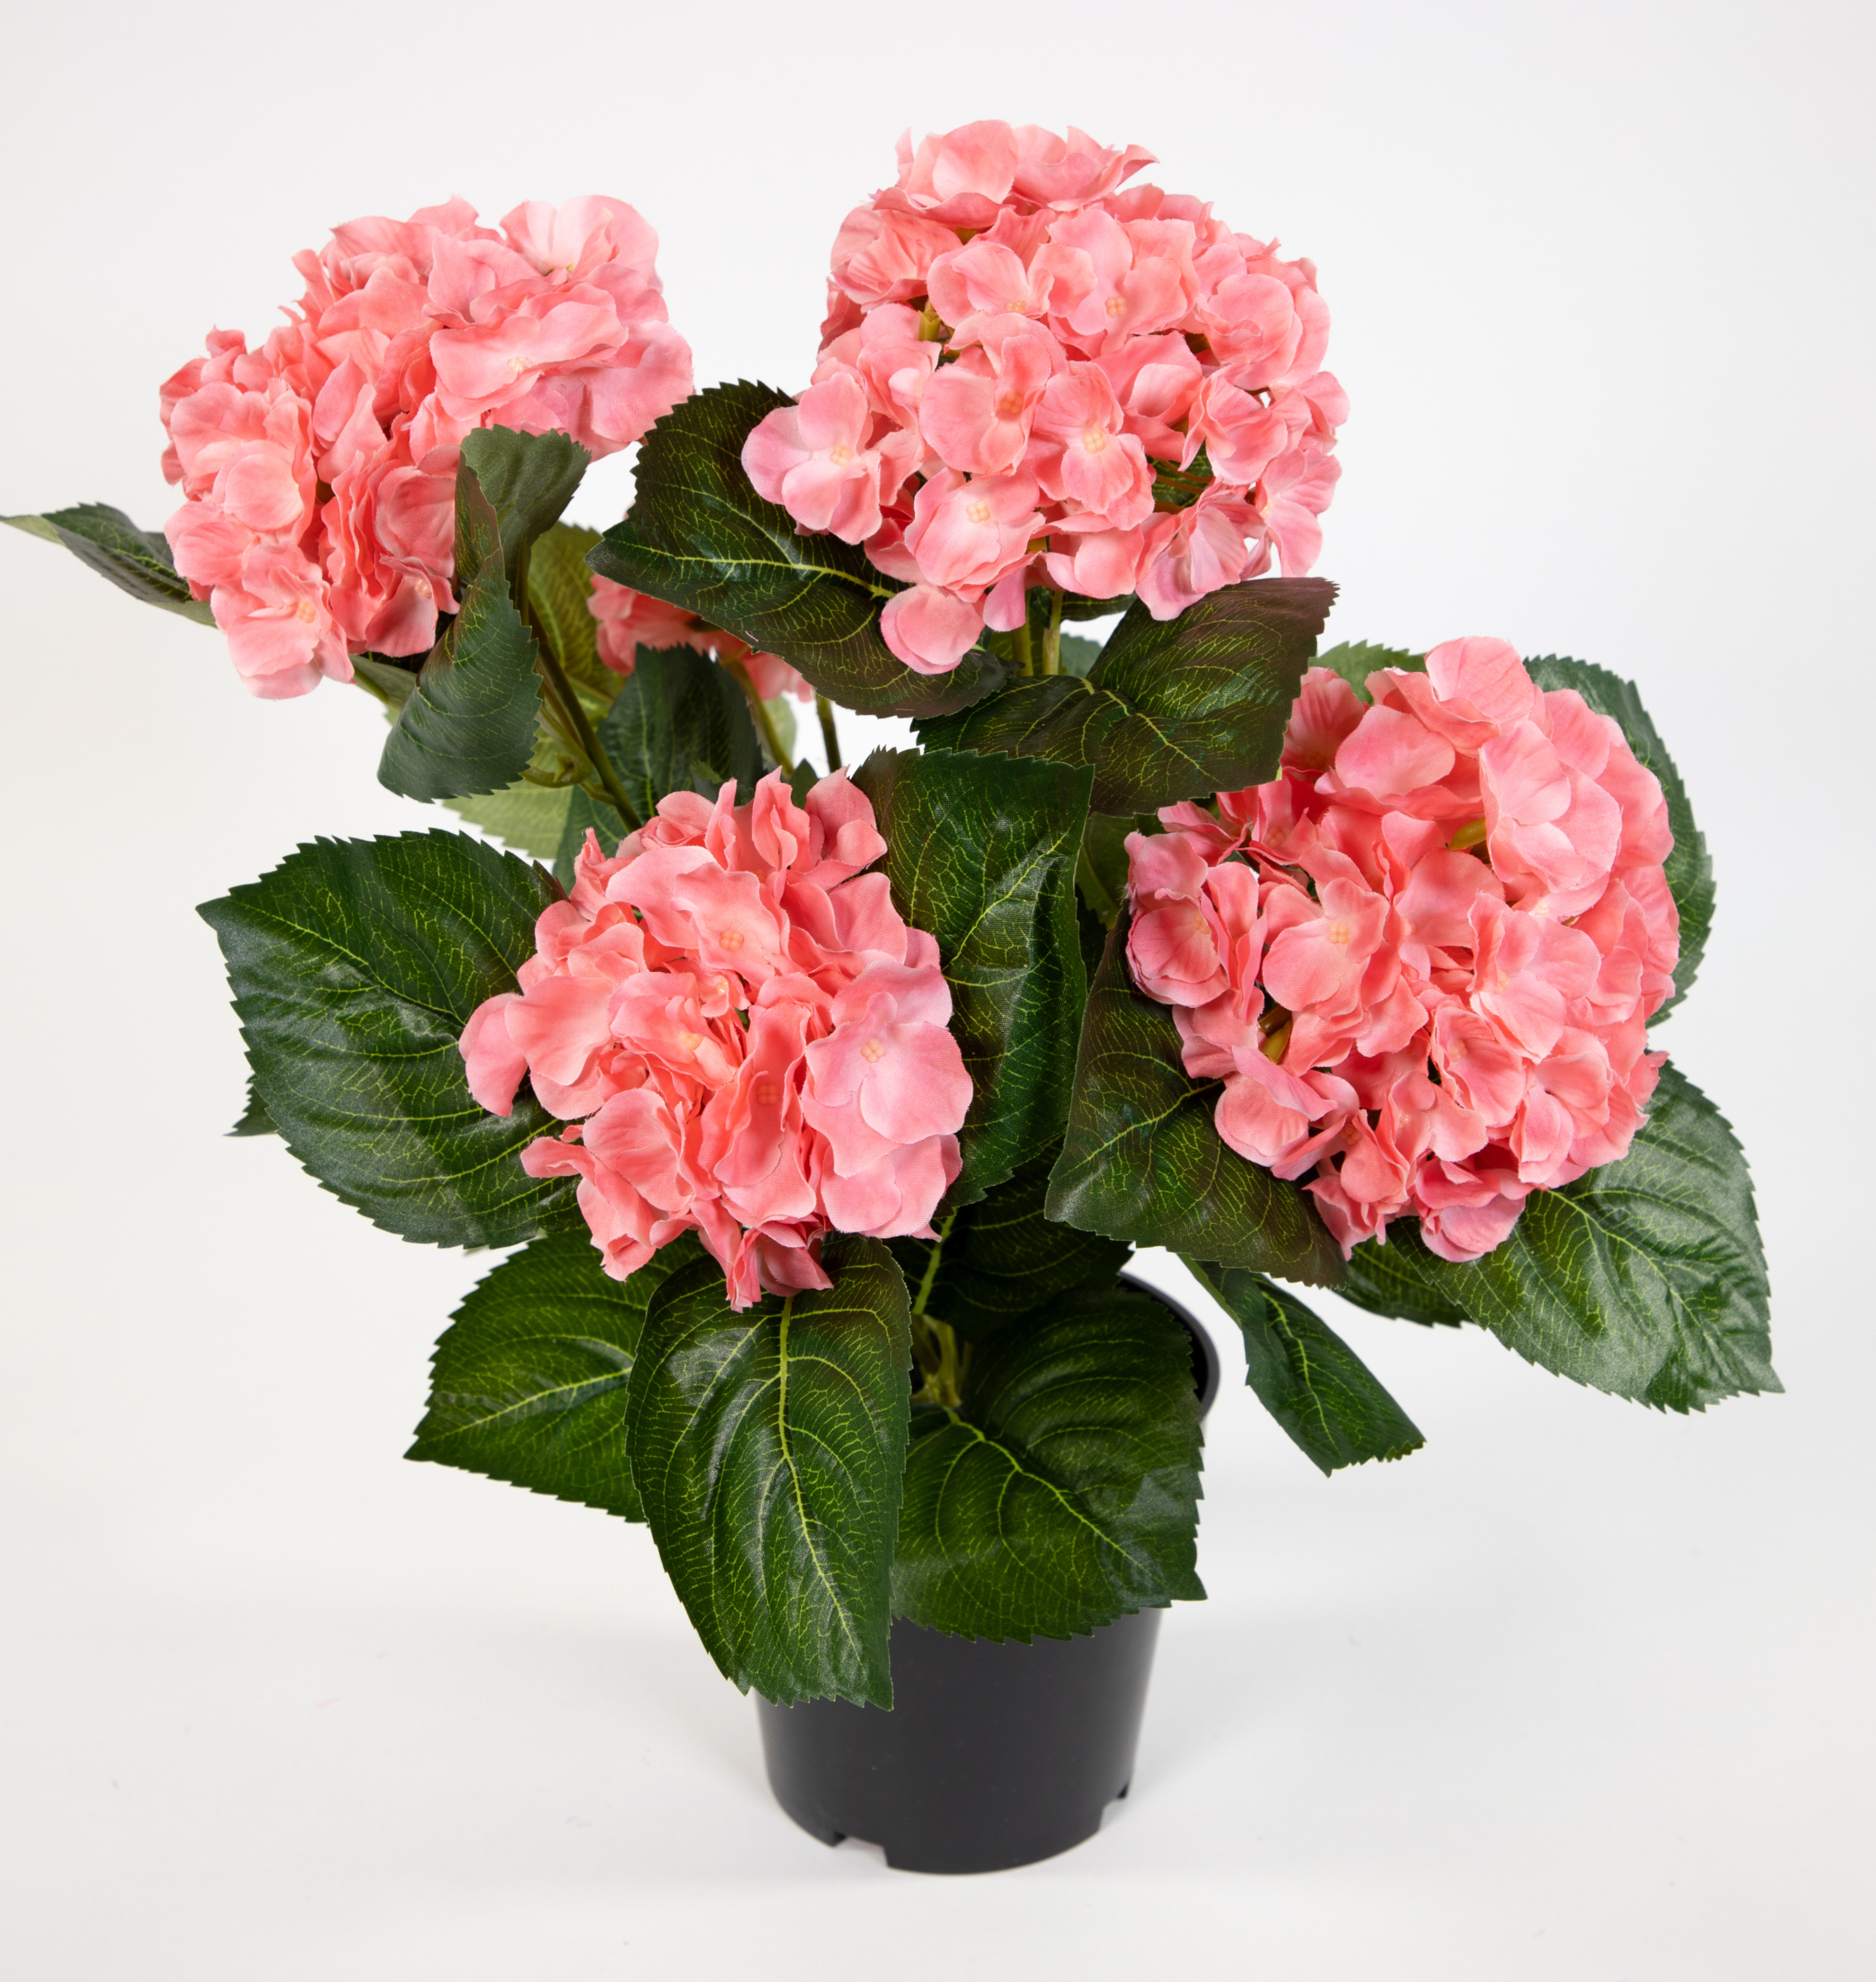 42cm Hortensienbusch Blumen im Hortensie künstliche Topf LM Deluxe Pflanzen Kunstpflanzen rosa-pink